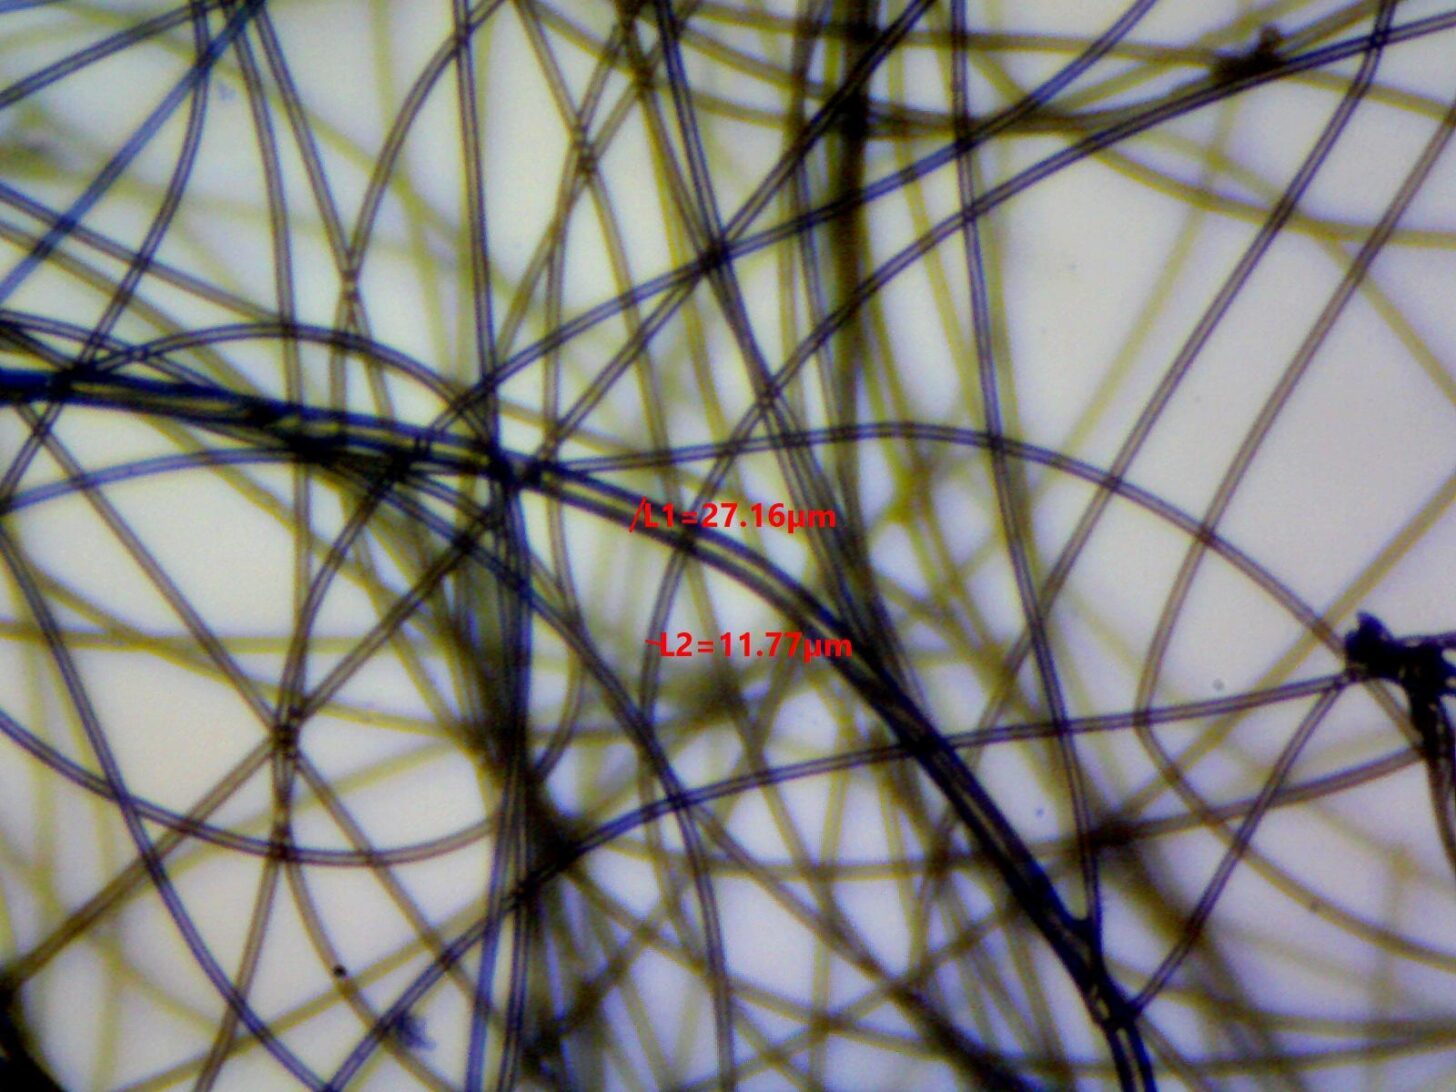 硅酮粘结纤维填充显微照片显示纤维直径测量为14.00,26.82，和43.87微米。